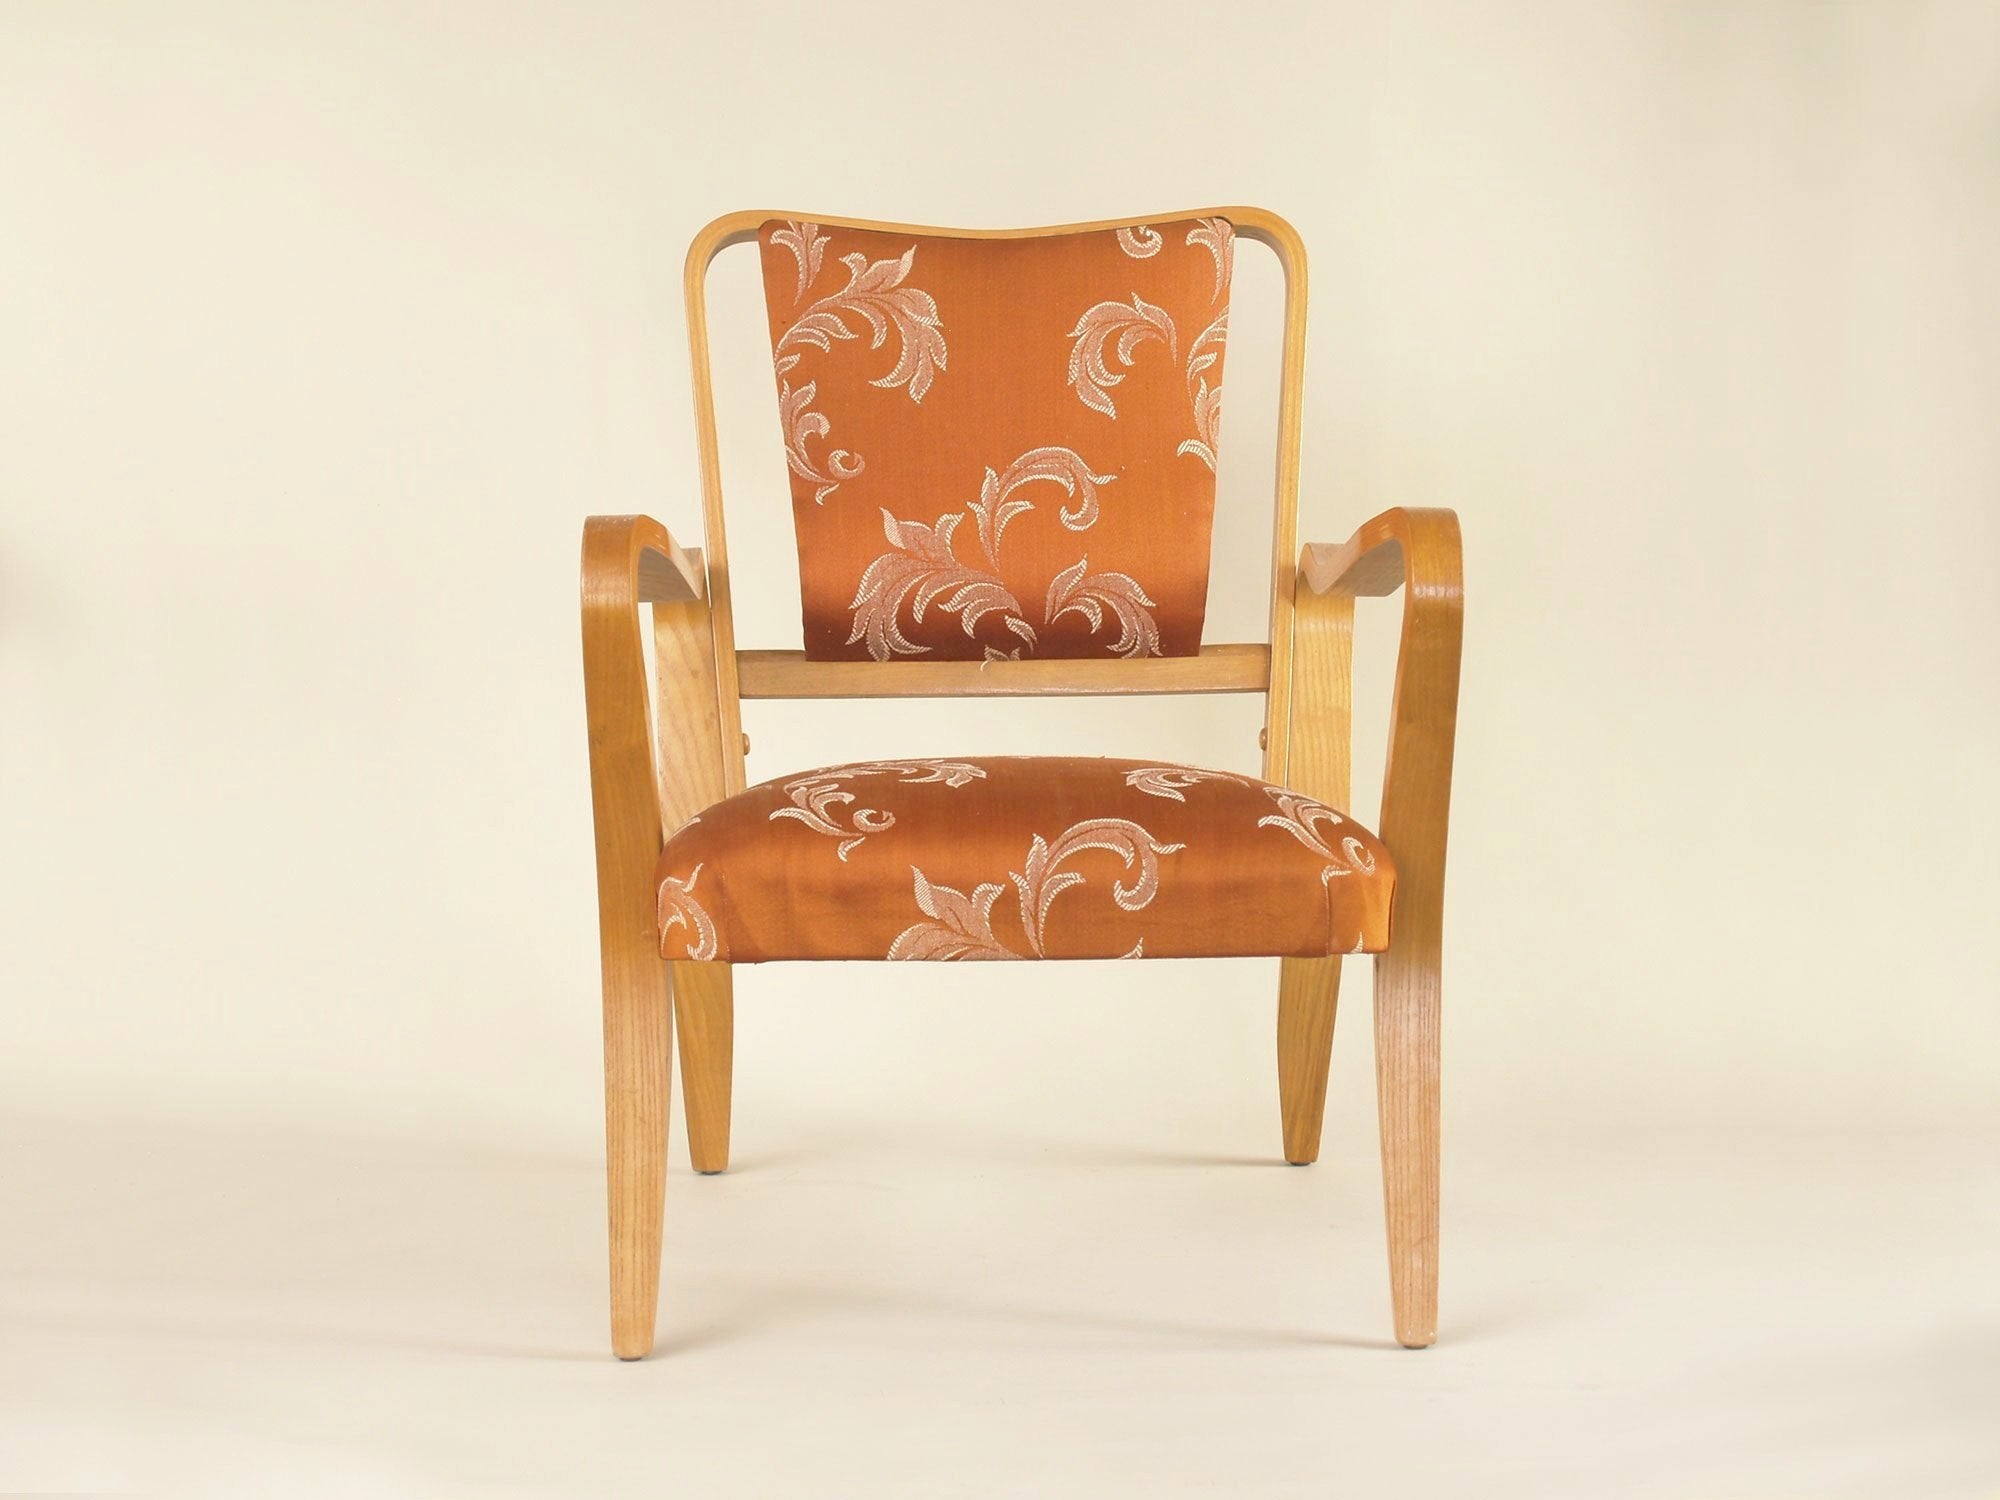 Rare paire de fauteuils Linden par G.A. Jenkins pour Thonet & Packet Furniture, Royaume-Uni (vers 1948)..Rare plywood Linden armchairs by G.A. Jenkins for Thonet & Packet Furniture, set of 2, United Kingdom (circa 1948)